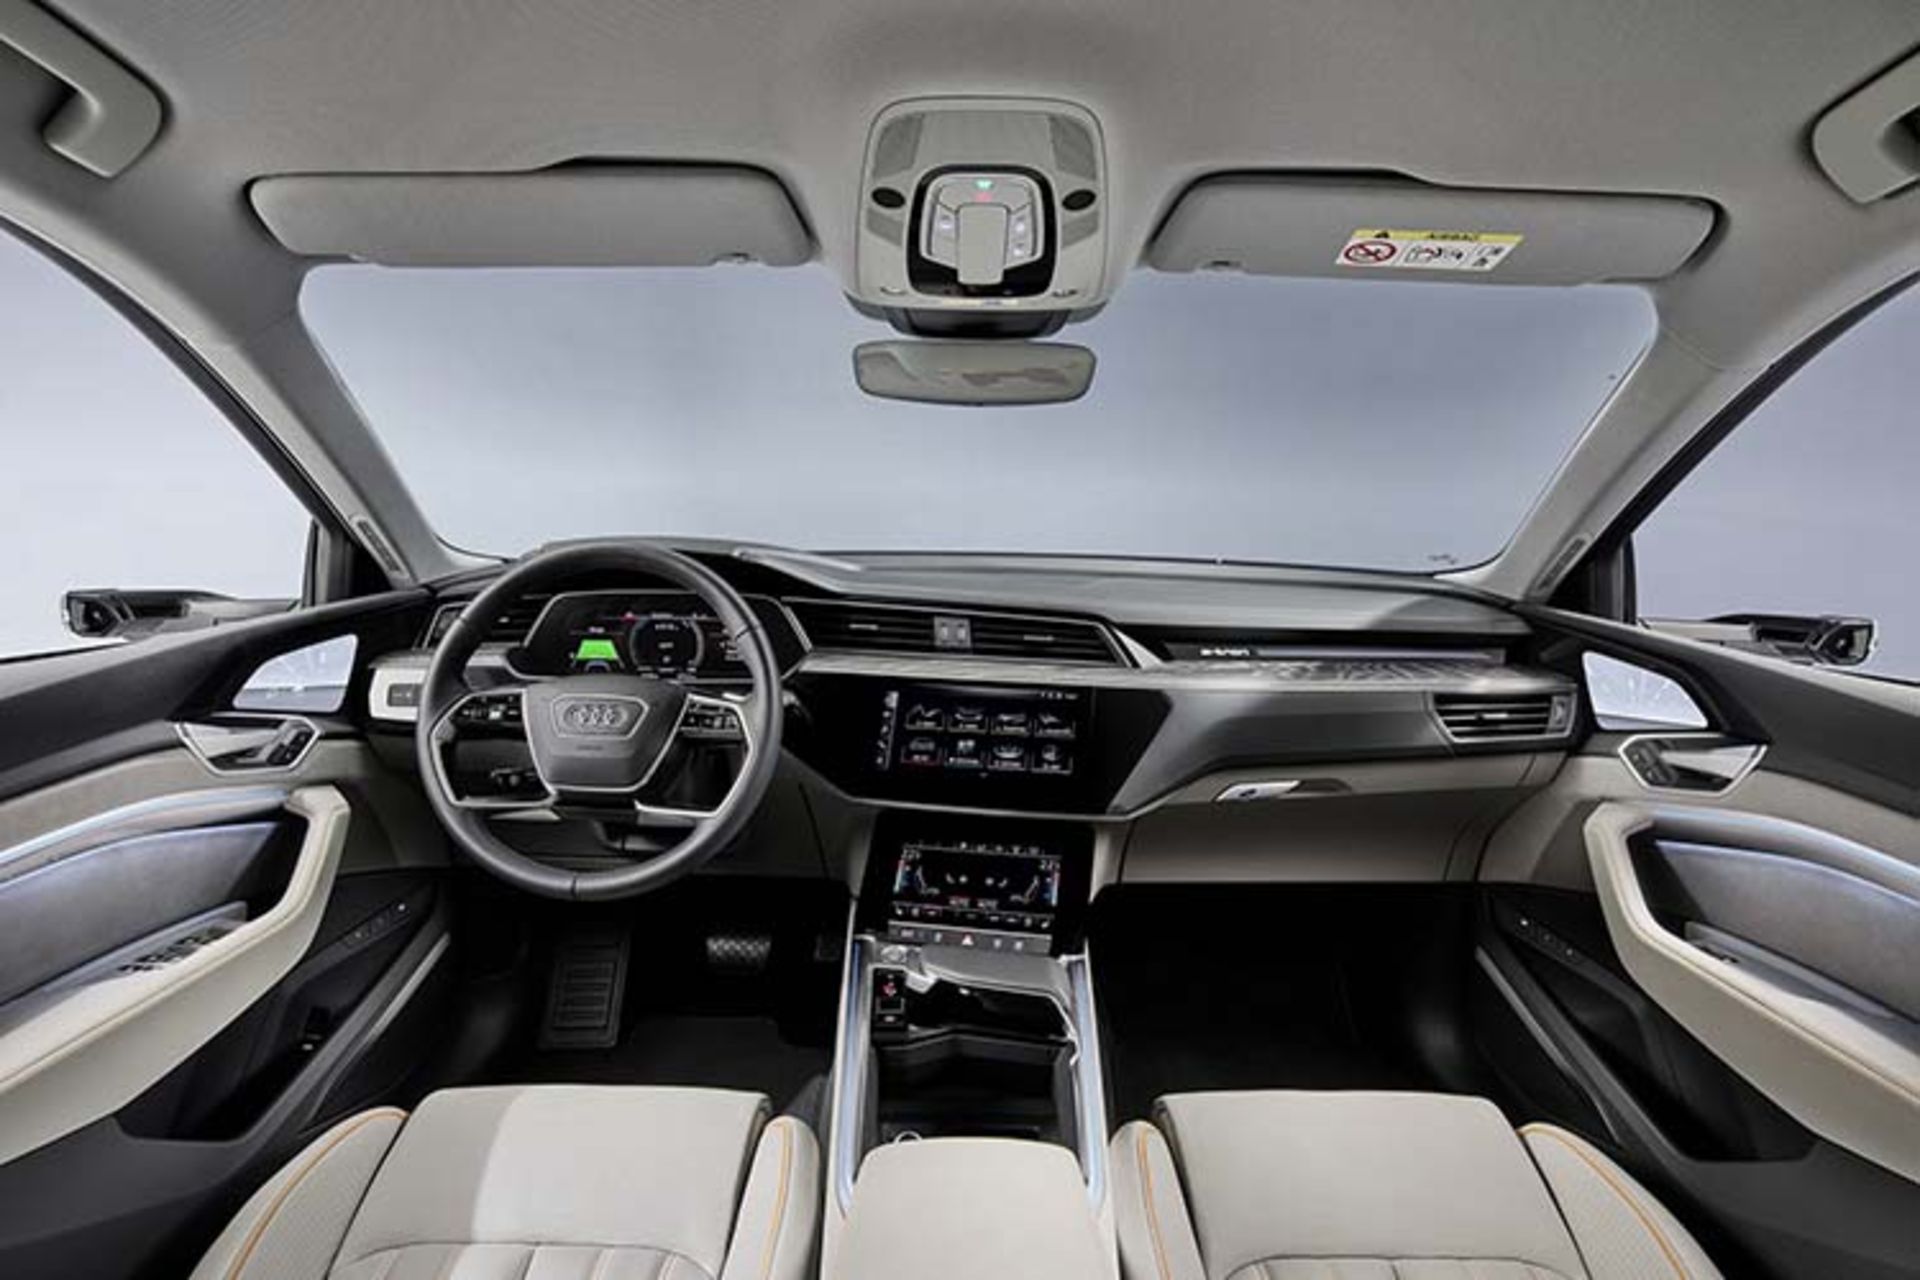 مرجع متخصصين ايران Audi e-tron 50 Quattro / آئودي اي-ترون كواترو